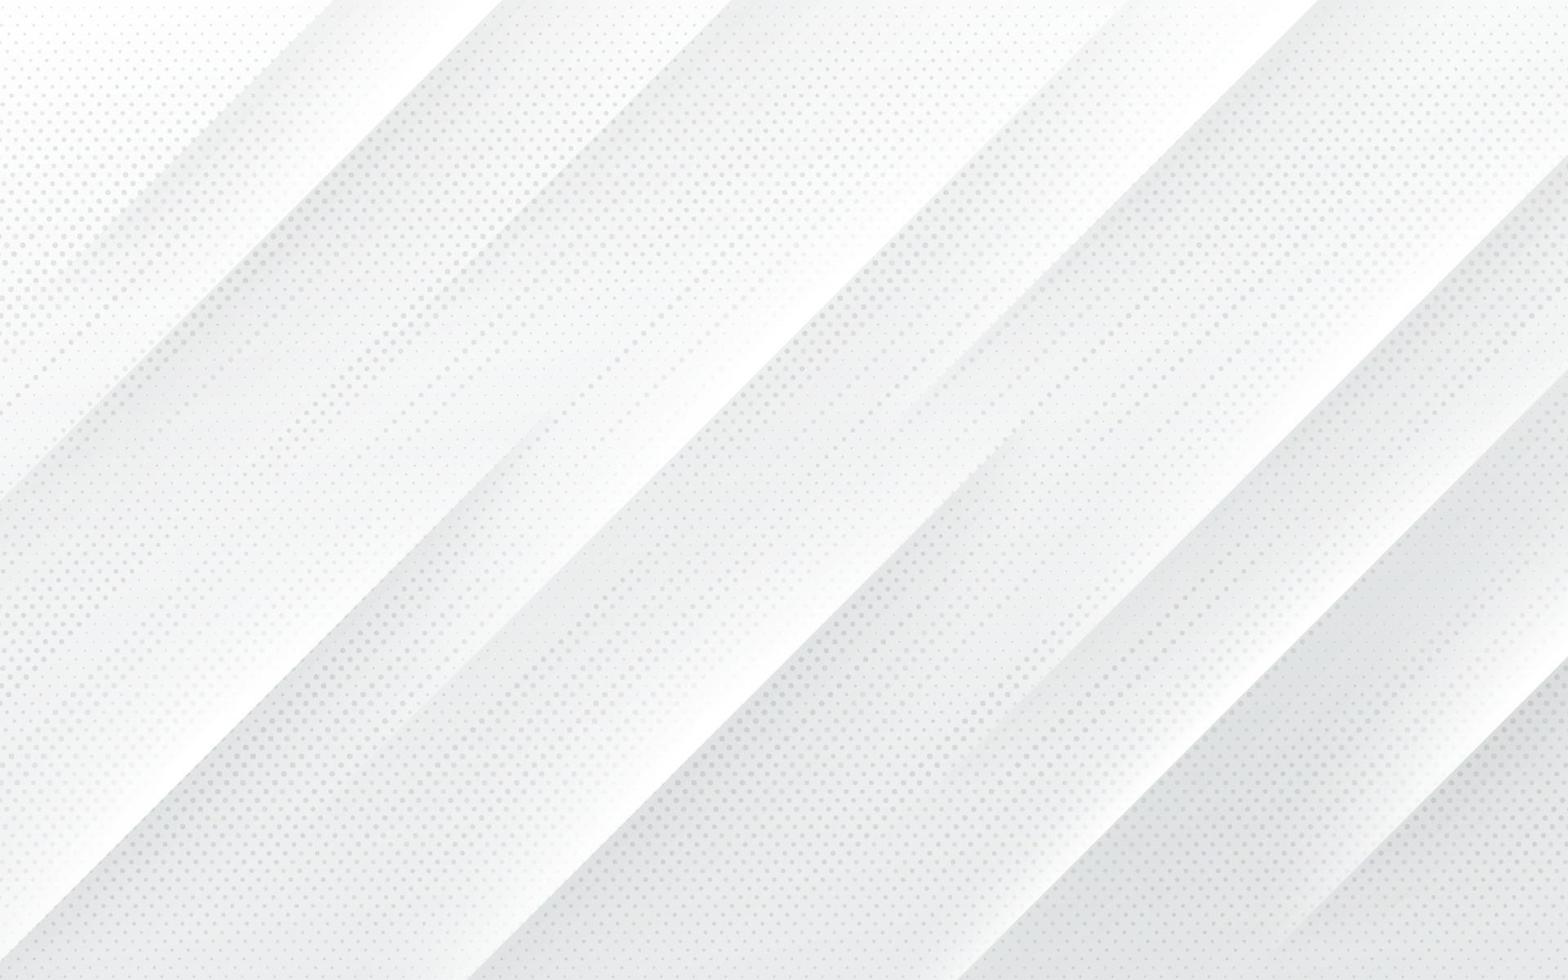 fundo de cor branca e prata com linhas de listras diagonais dinâmicas e textura de meio-tom. design de banner de modelo de cor cinza moderno e simples. conceito de luxo e elegante. vetor eps10